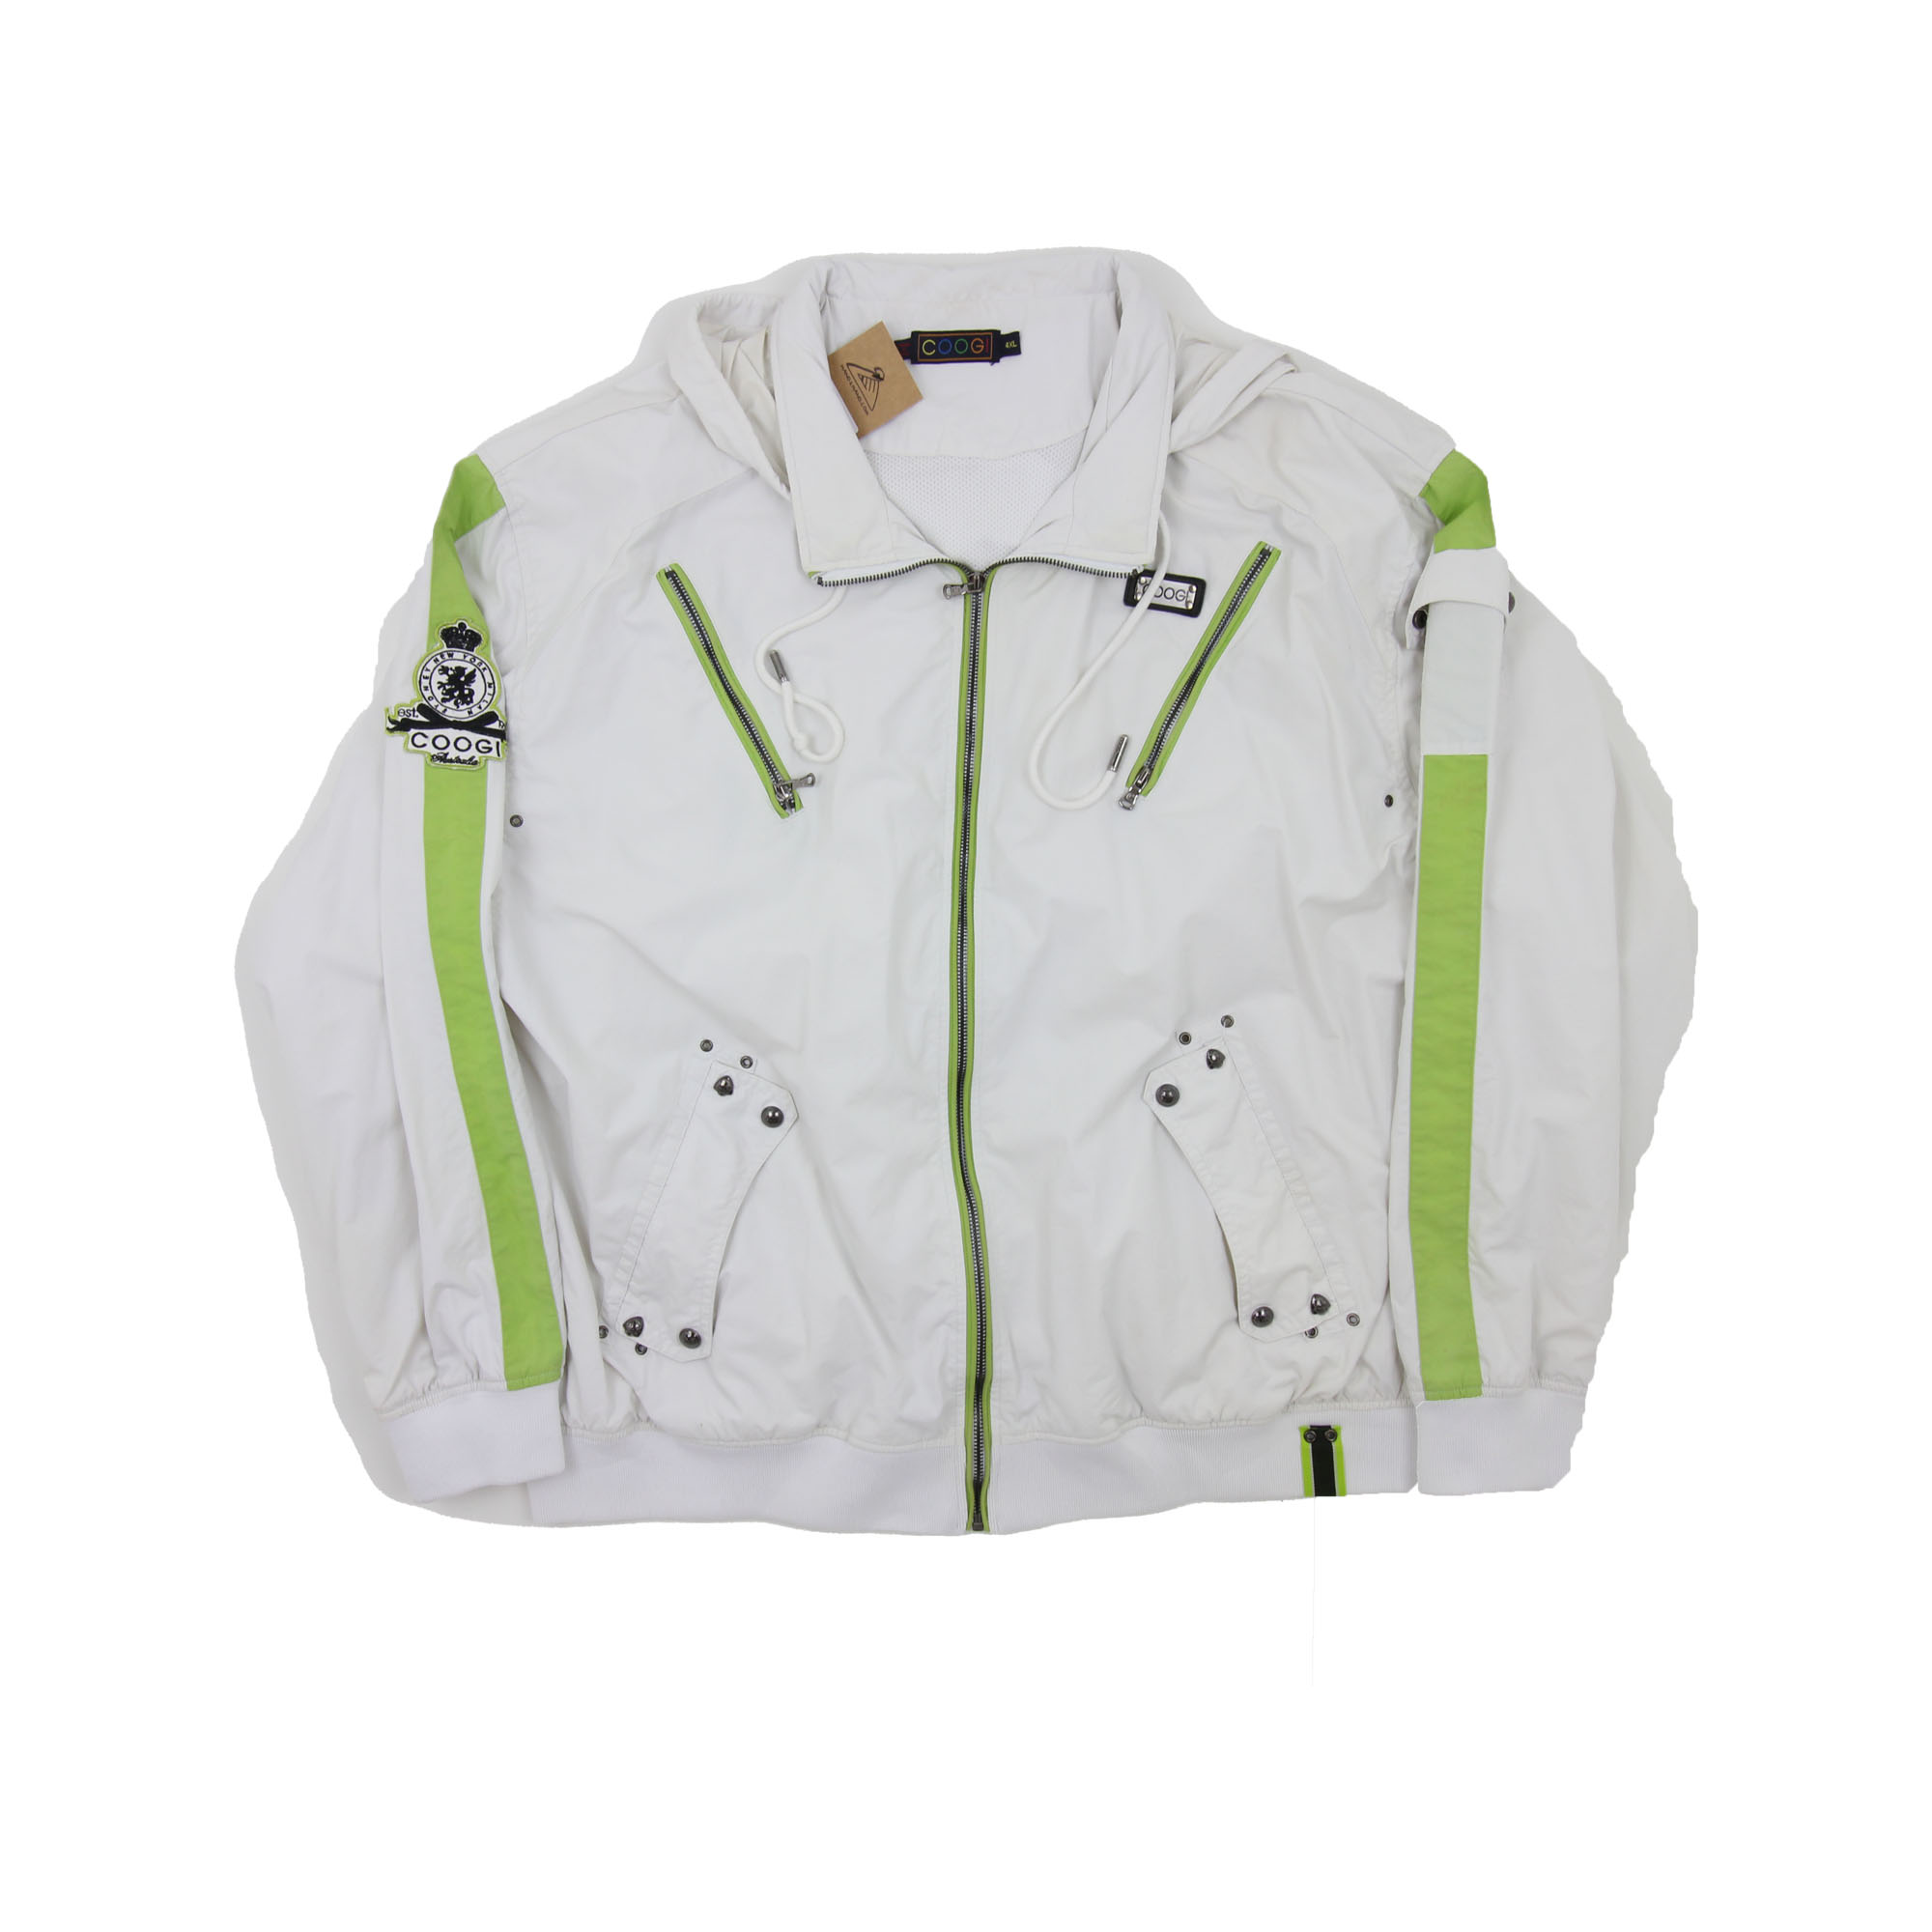 Coogi Rain Jacket White -  XL